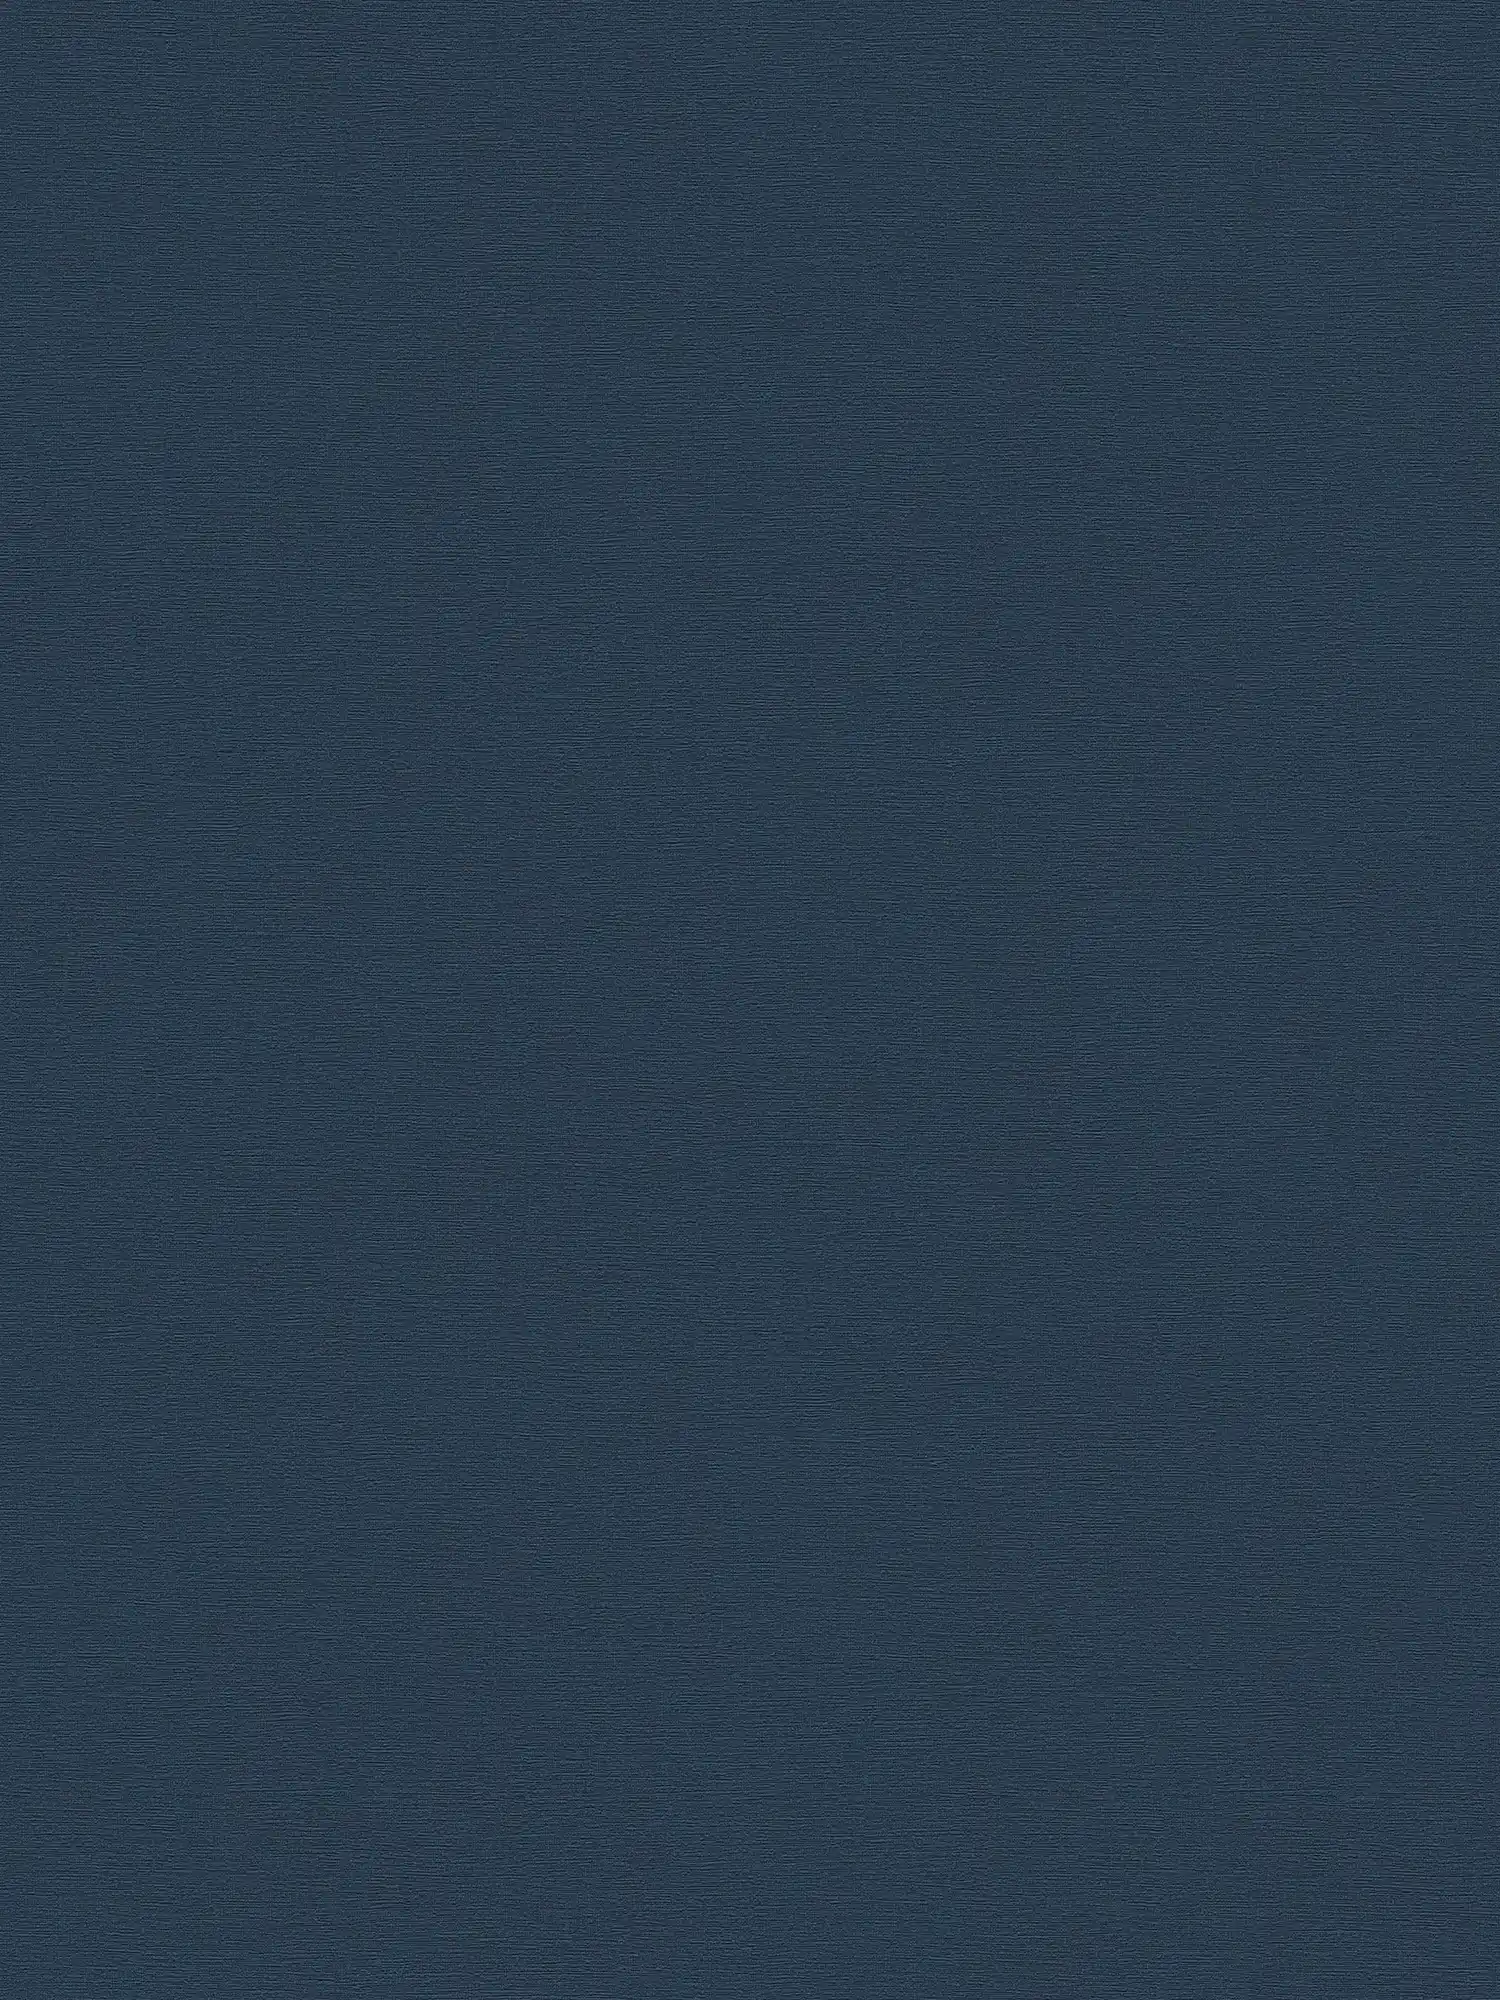 Papel pintado oscuro estructura de lino, uni y seda mate - azul
